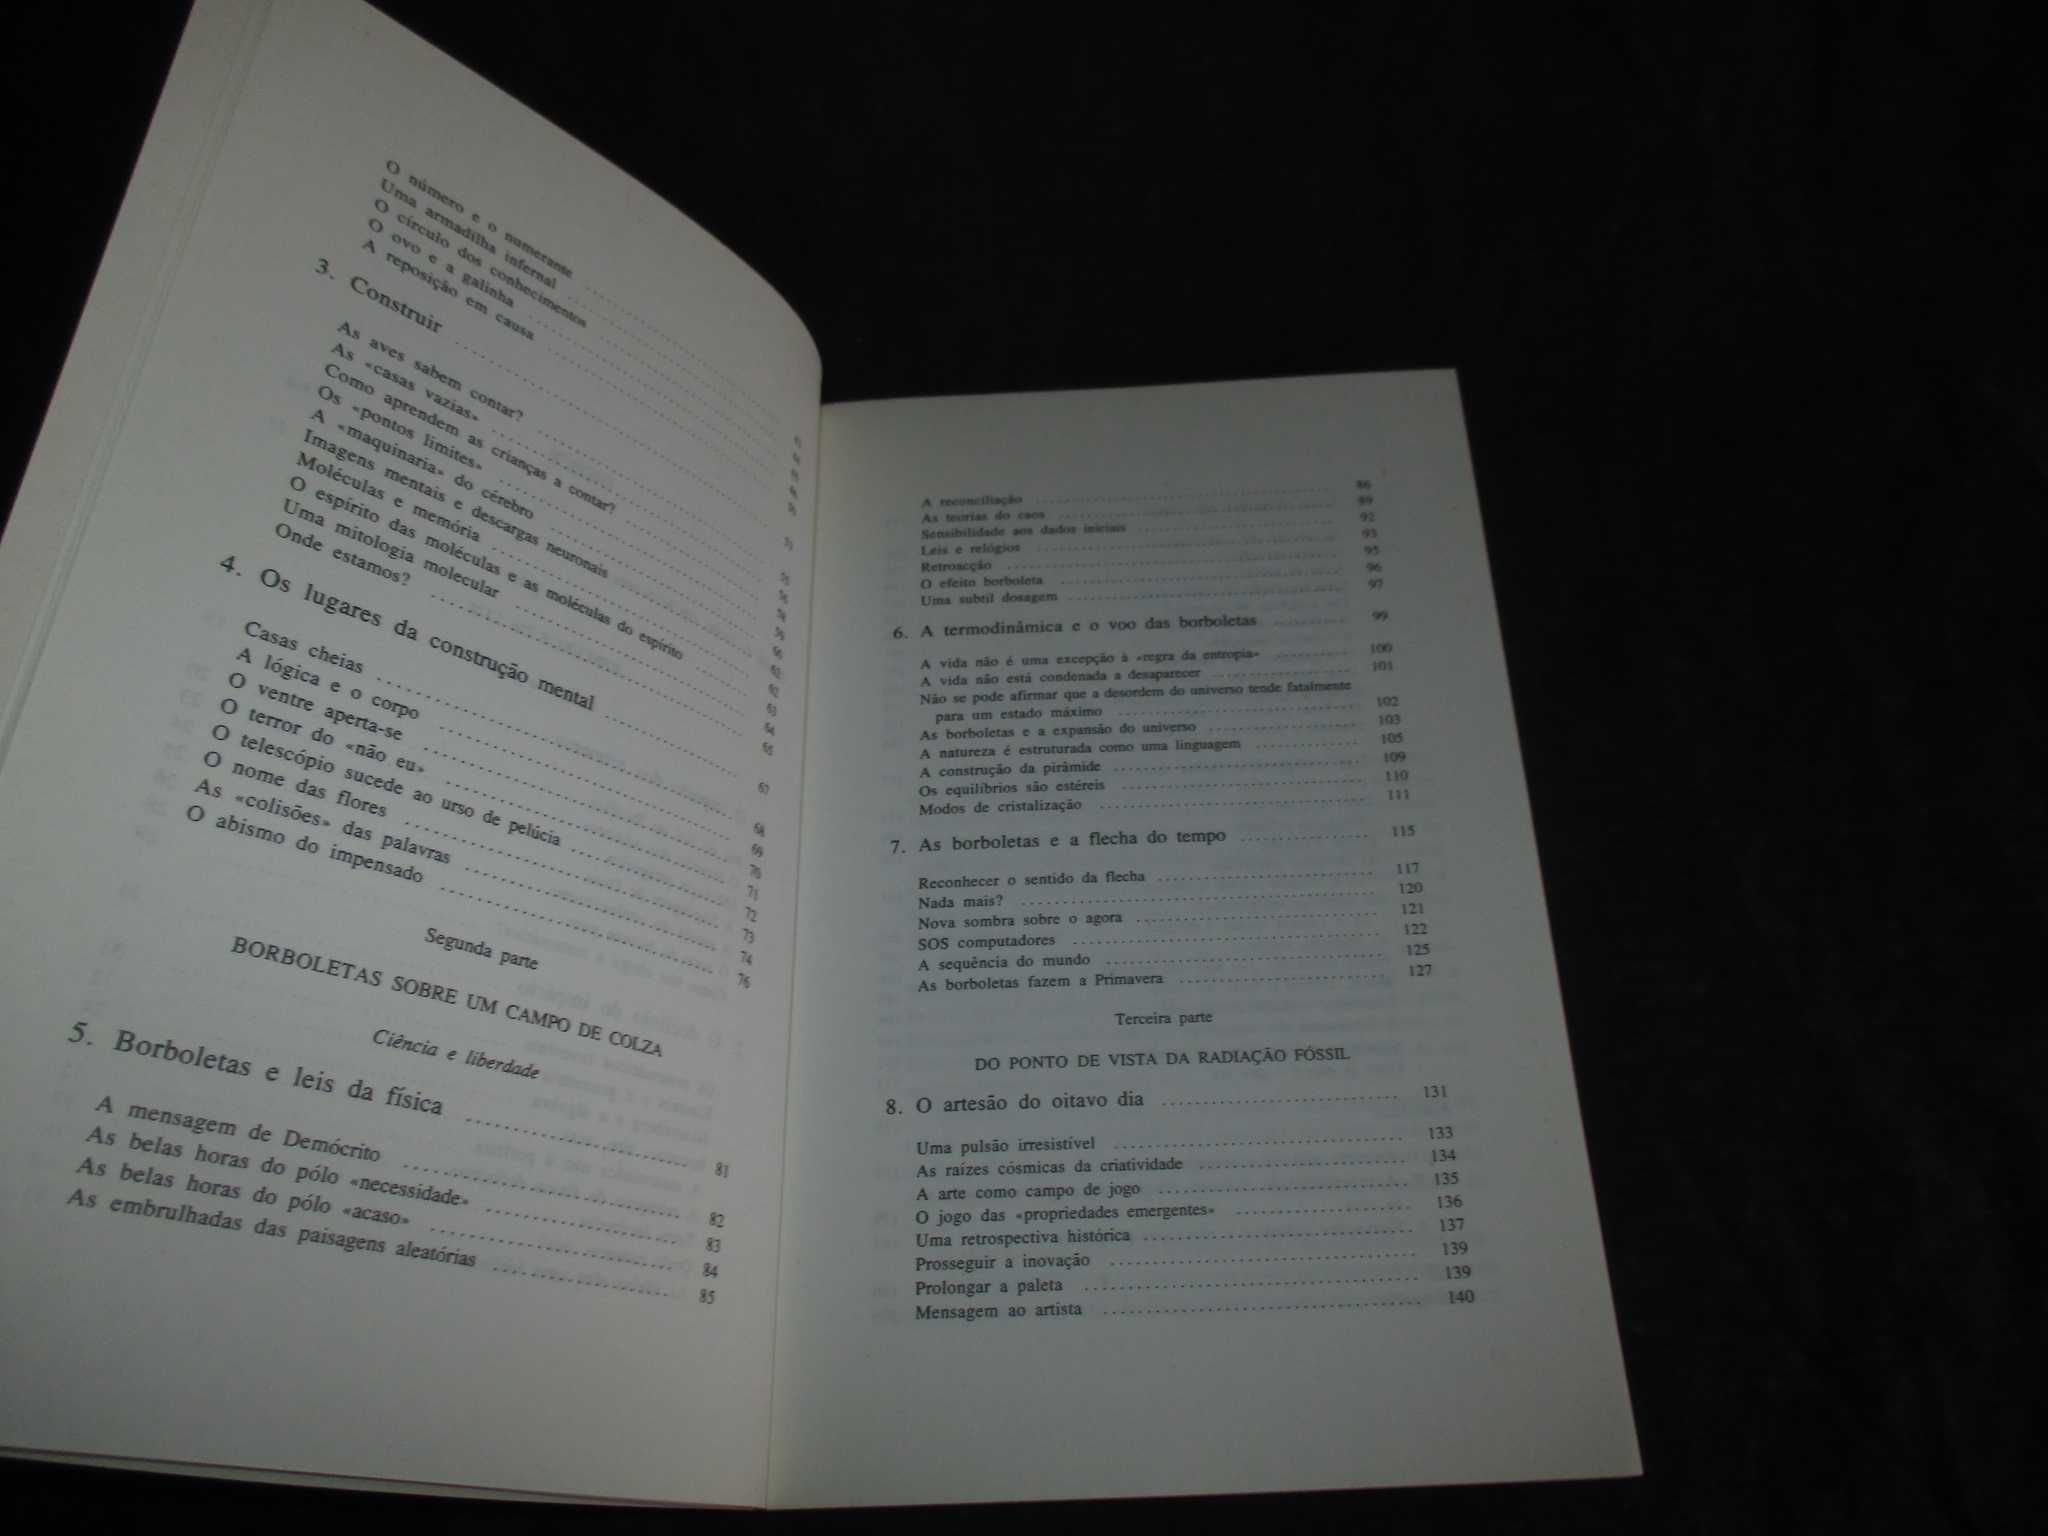 Livro Malicorne Reflexões de um observador da natureza Hubert Reeves